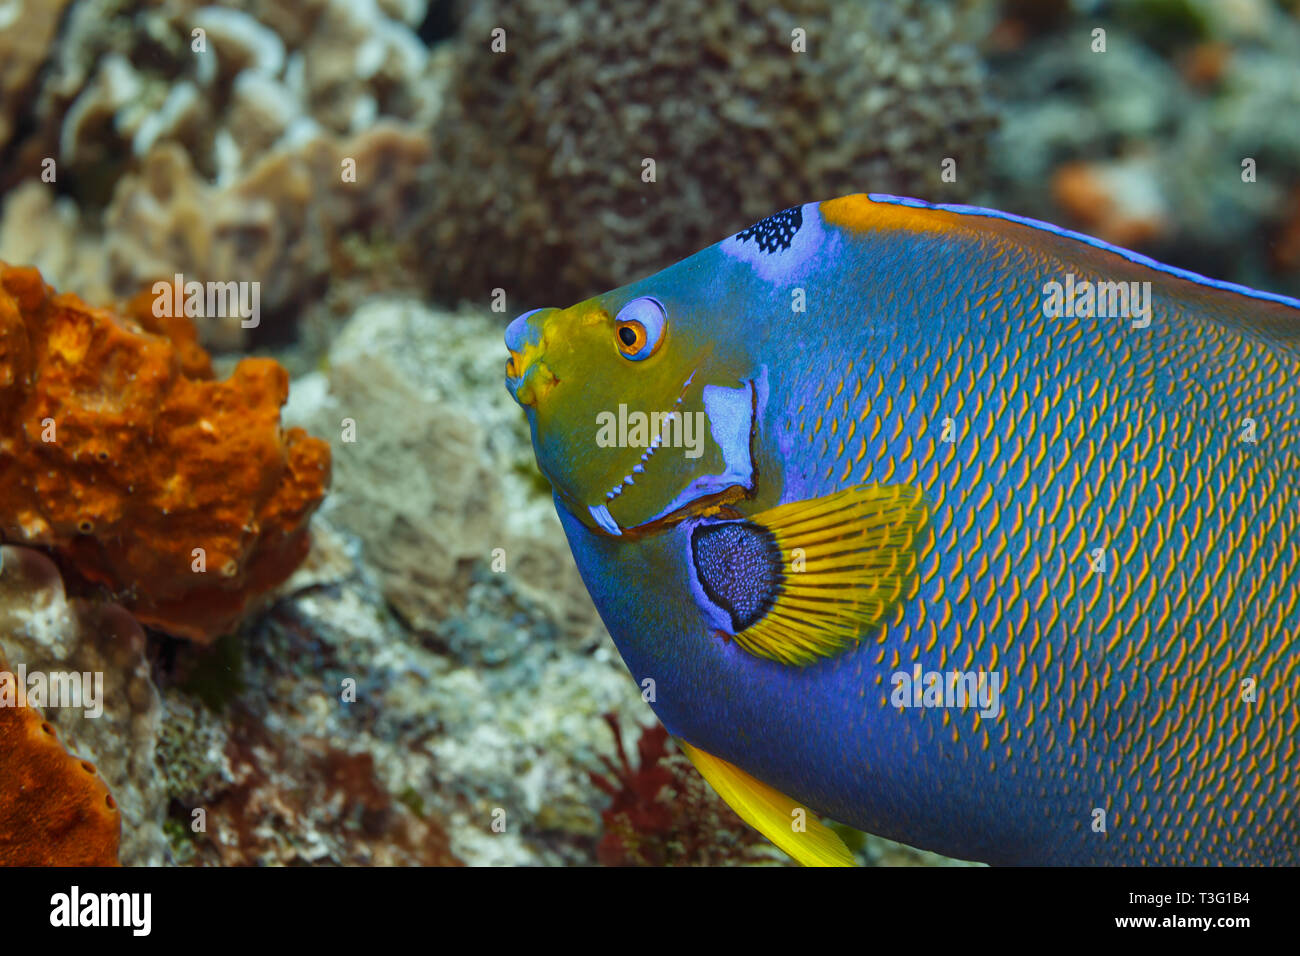 Gros plan du côté d'un poisson ange reine bleu, Holacanthus ciliaris, avec queue et nageoire jaunes Banque D'Images